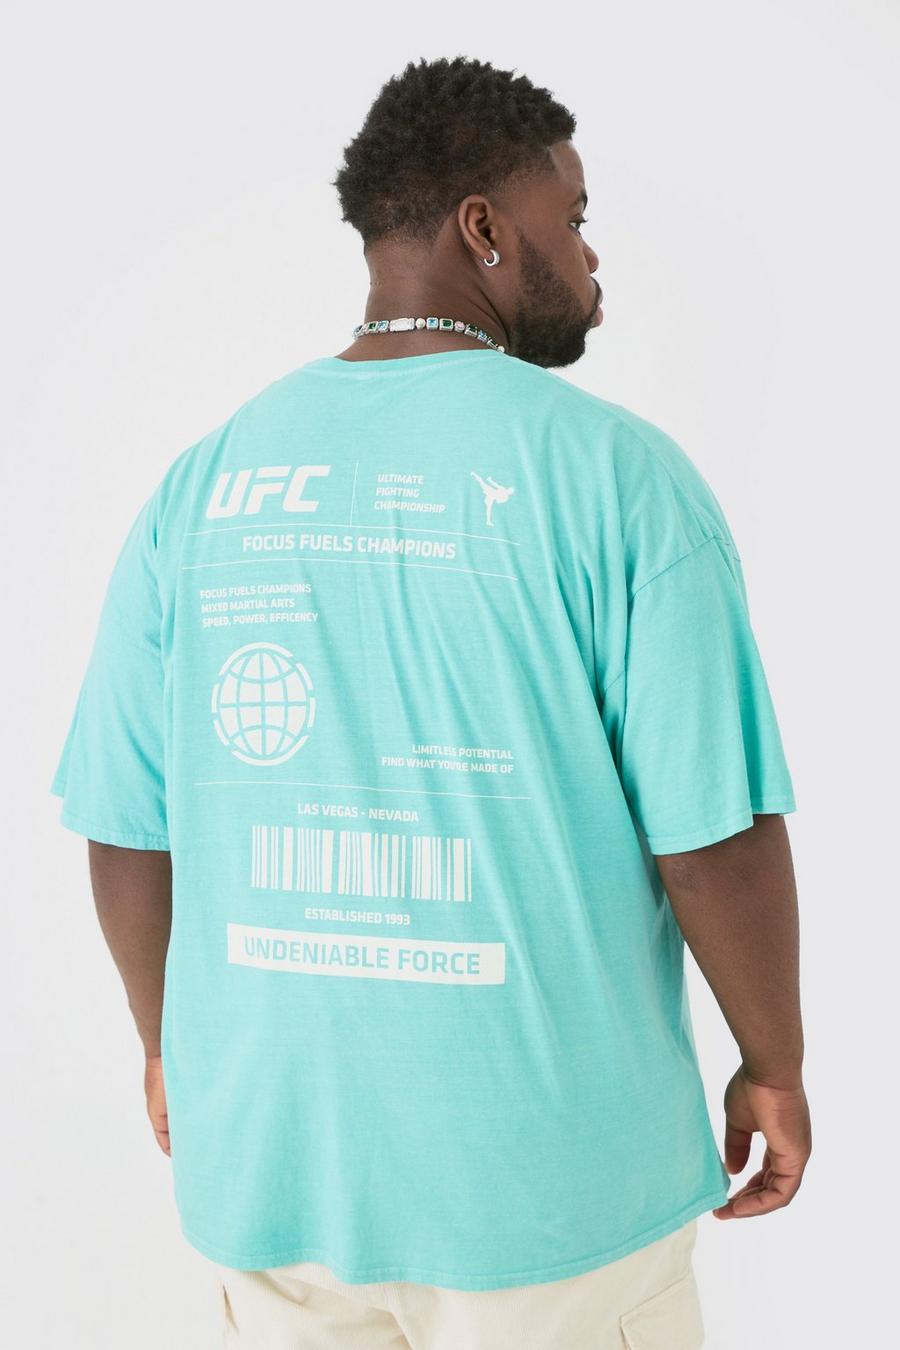 Plus T-Shirt mit lizenziertem Ufc Print in Grün, Green